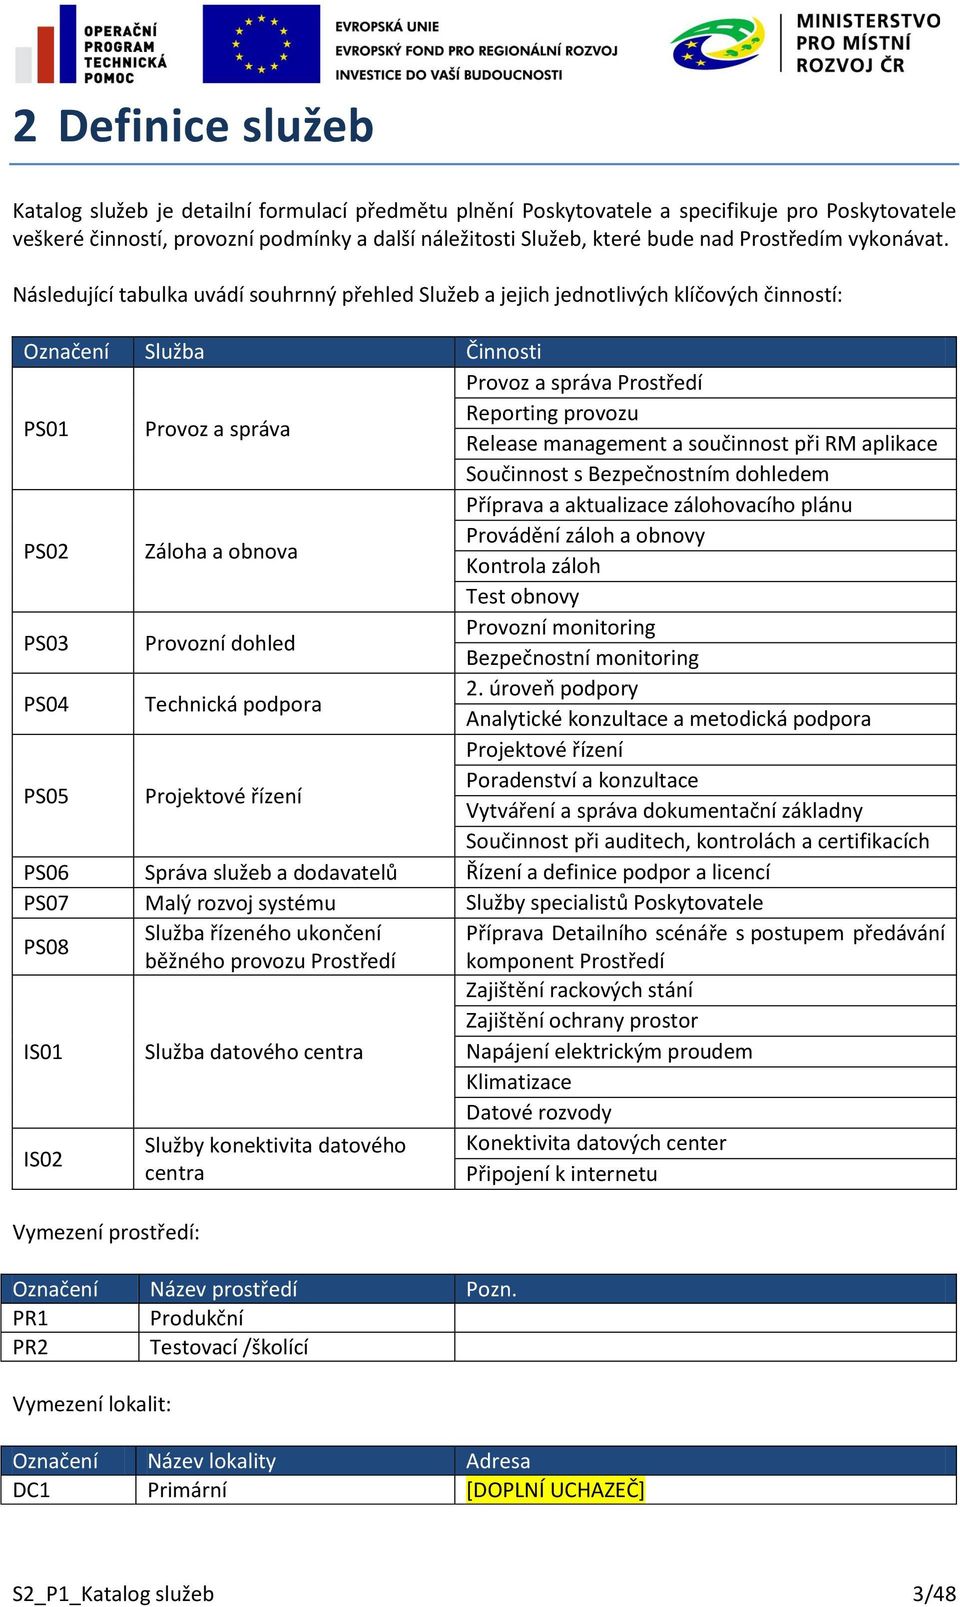 Následující tabulka uvádí souhrnný přehled Služeb a jejich jednotlivých klíčových činností: Označení Služba Činnosti PS01 Provoz a správa Provoz a správa Prostředí Reporting provozu Release